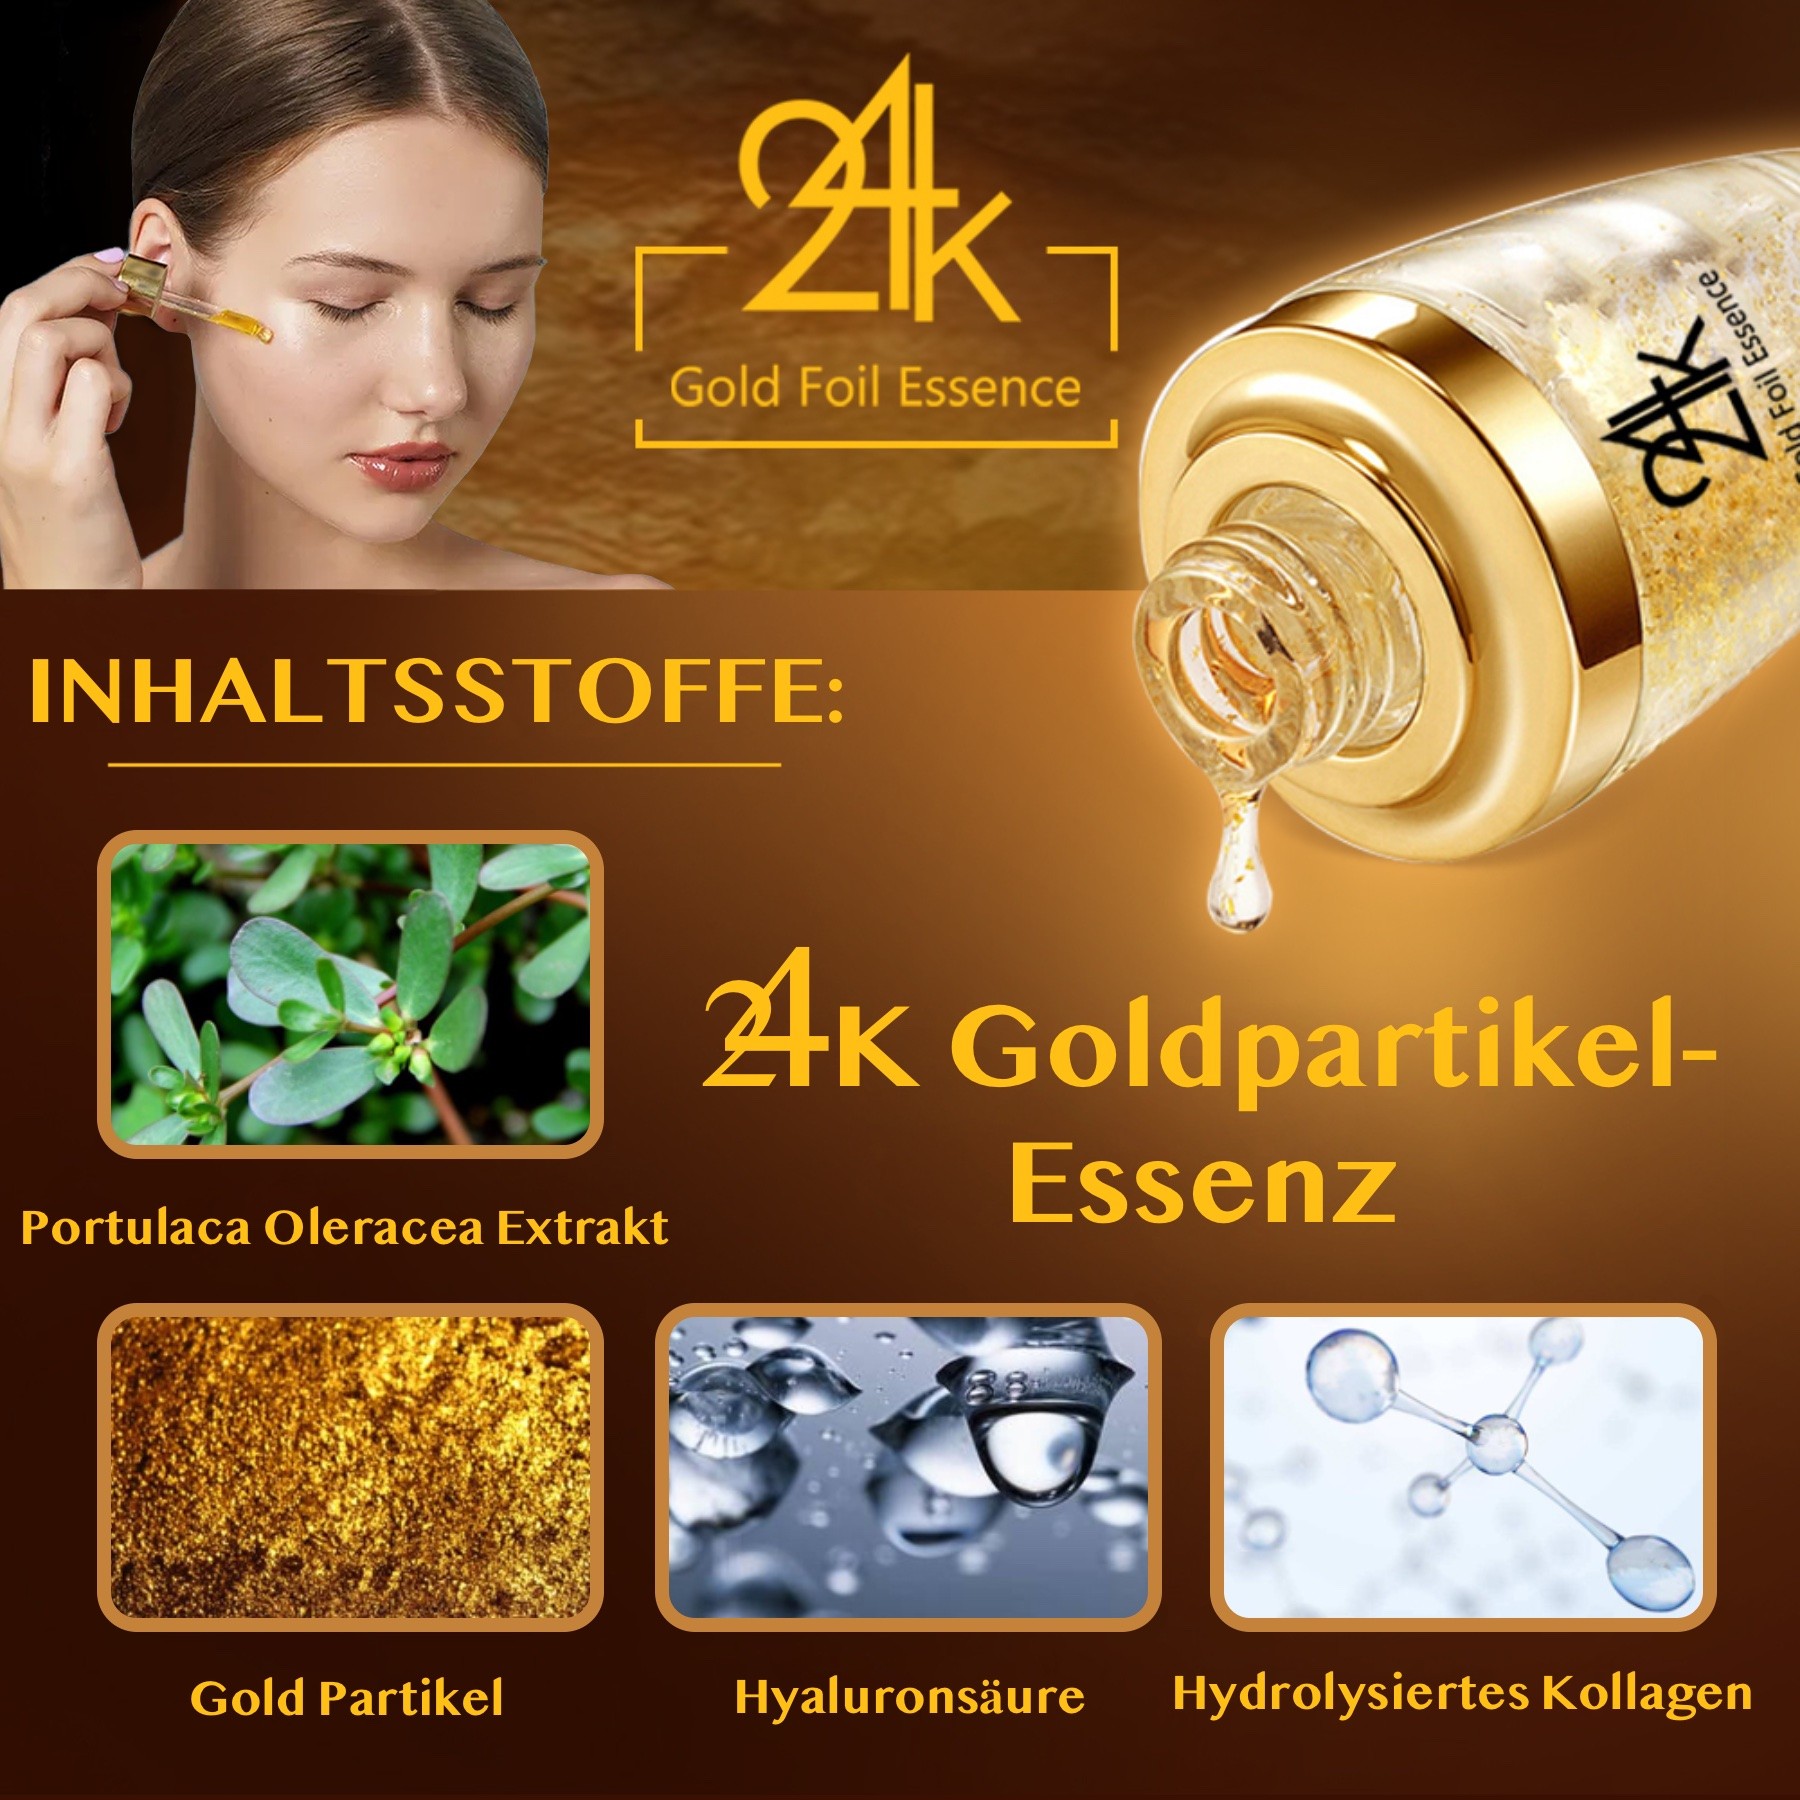 Crystal Collagen Gold Set 24K